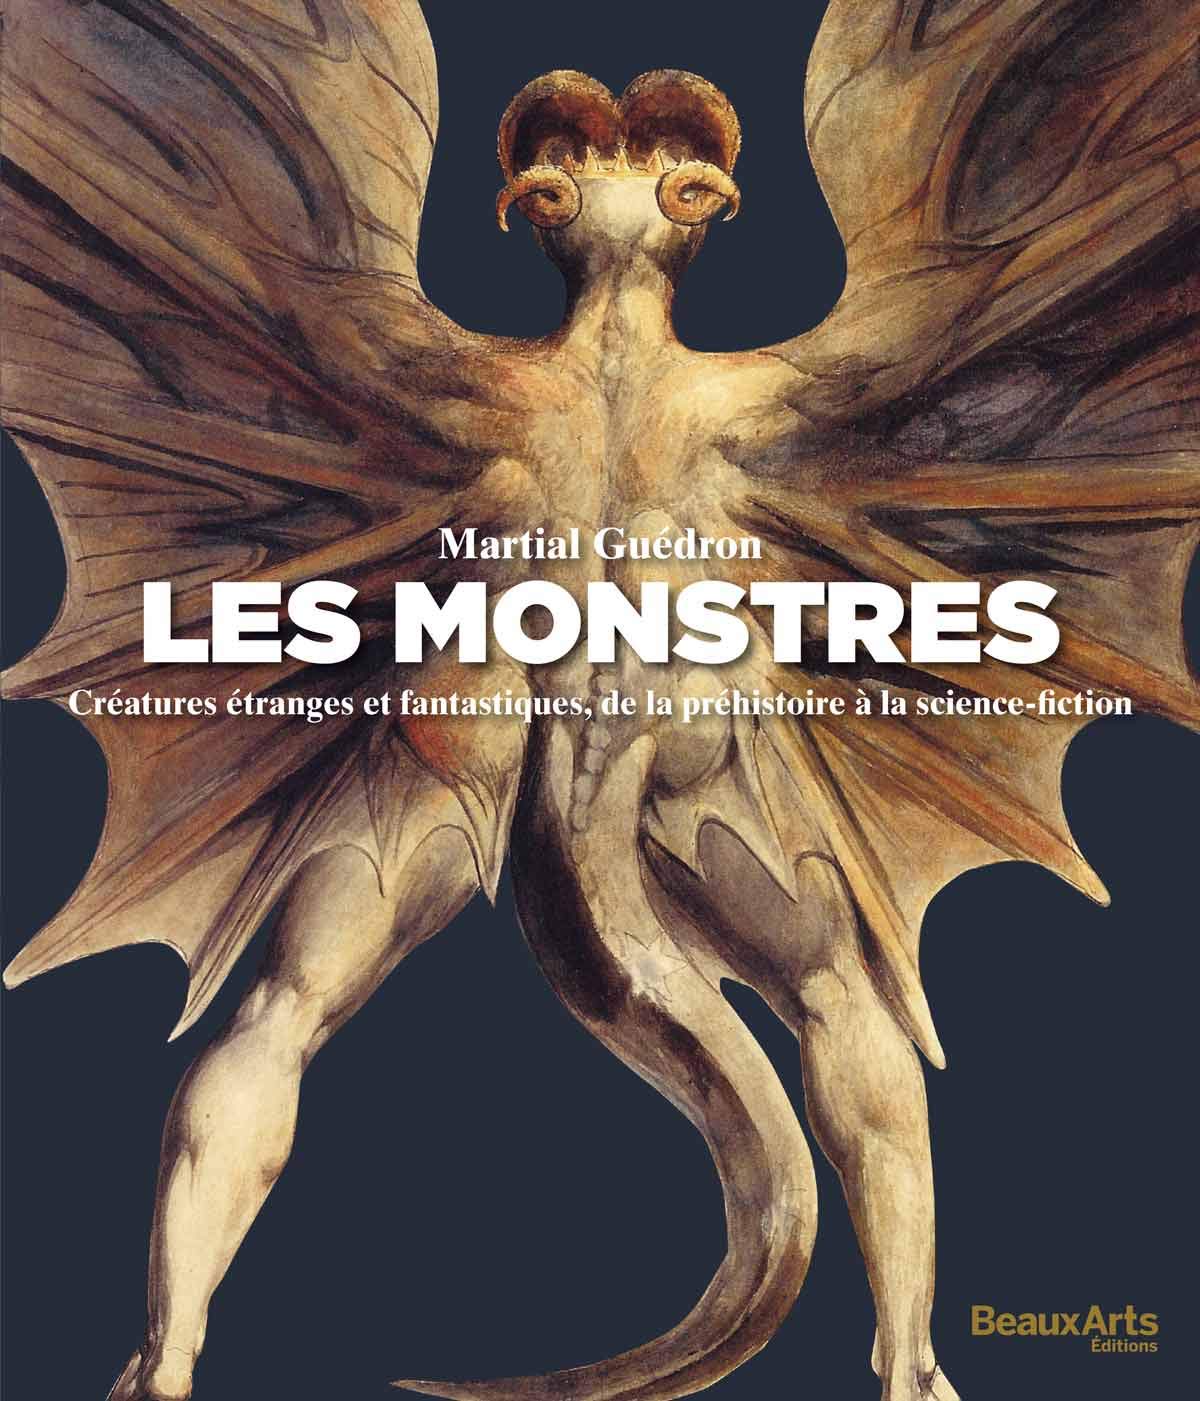 Martial Guédron, monstres - créatures étranges et fantastiques, de la préhistoire à la science-fiction. Beaux-Arts Edition